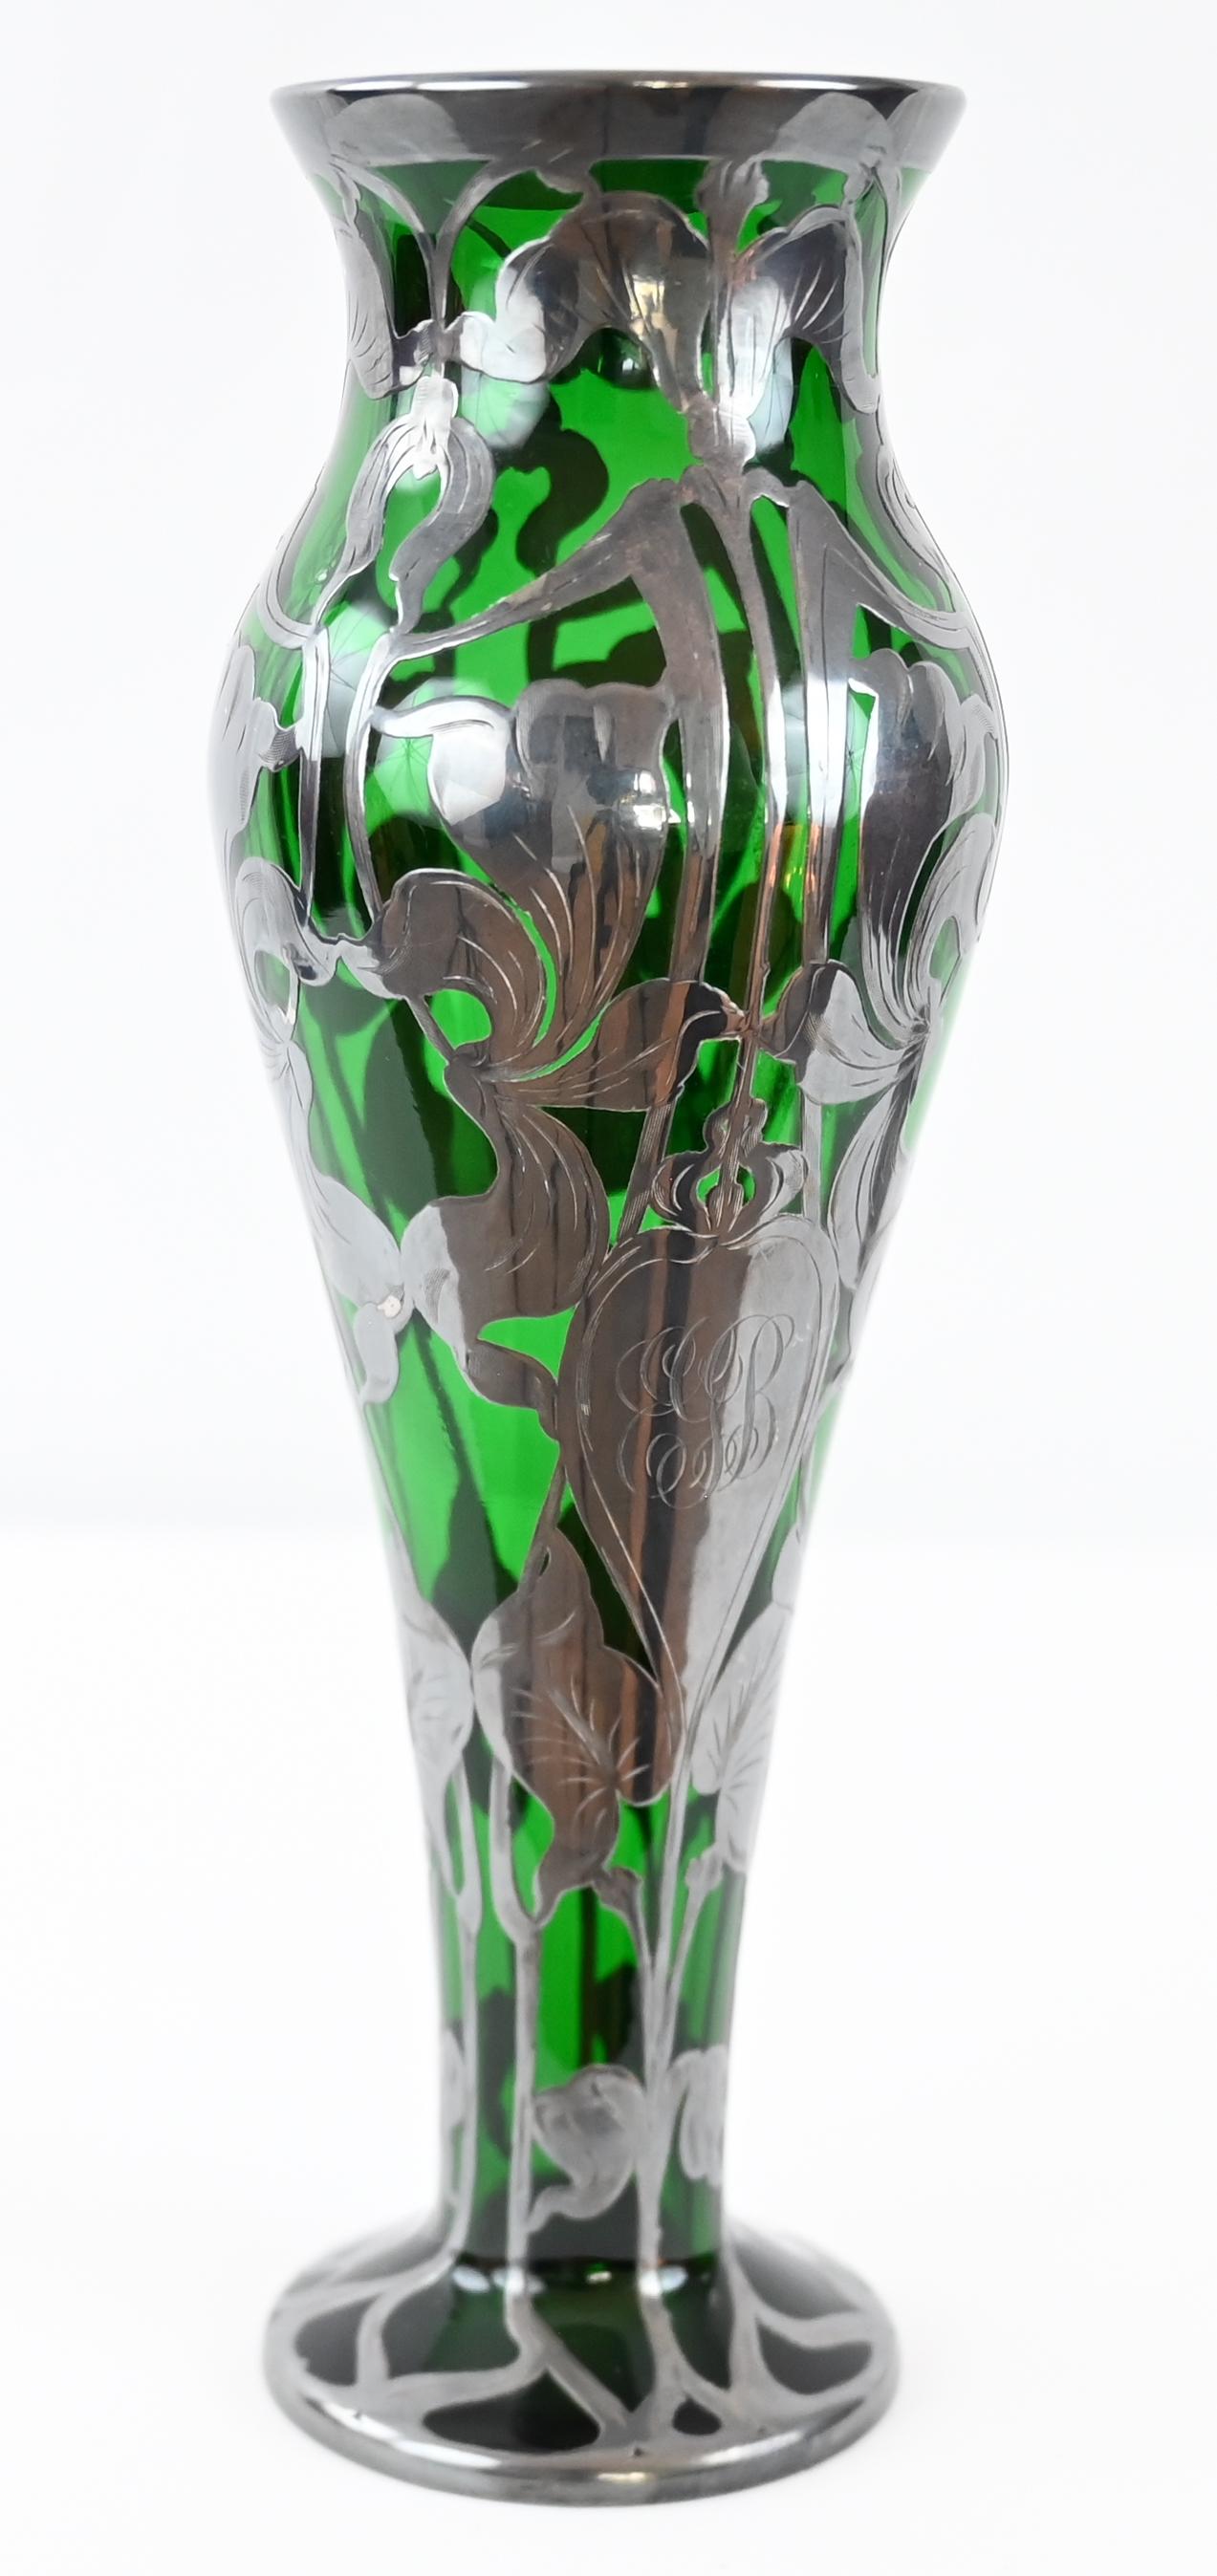 Un vase en verre d'art Art nouveau de qualité, par Loetz, le fabricant de verre historique de la municipalité d'Autriche, avec la gravure Alvin Sterling. 
Recouvrement argenté. Recouvrement sous forme de motifs ouverts et horizontaux avec des